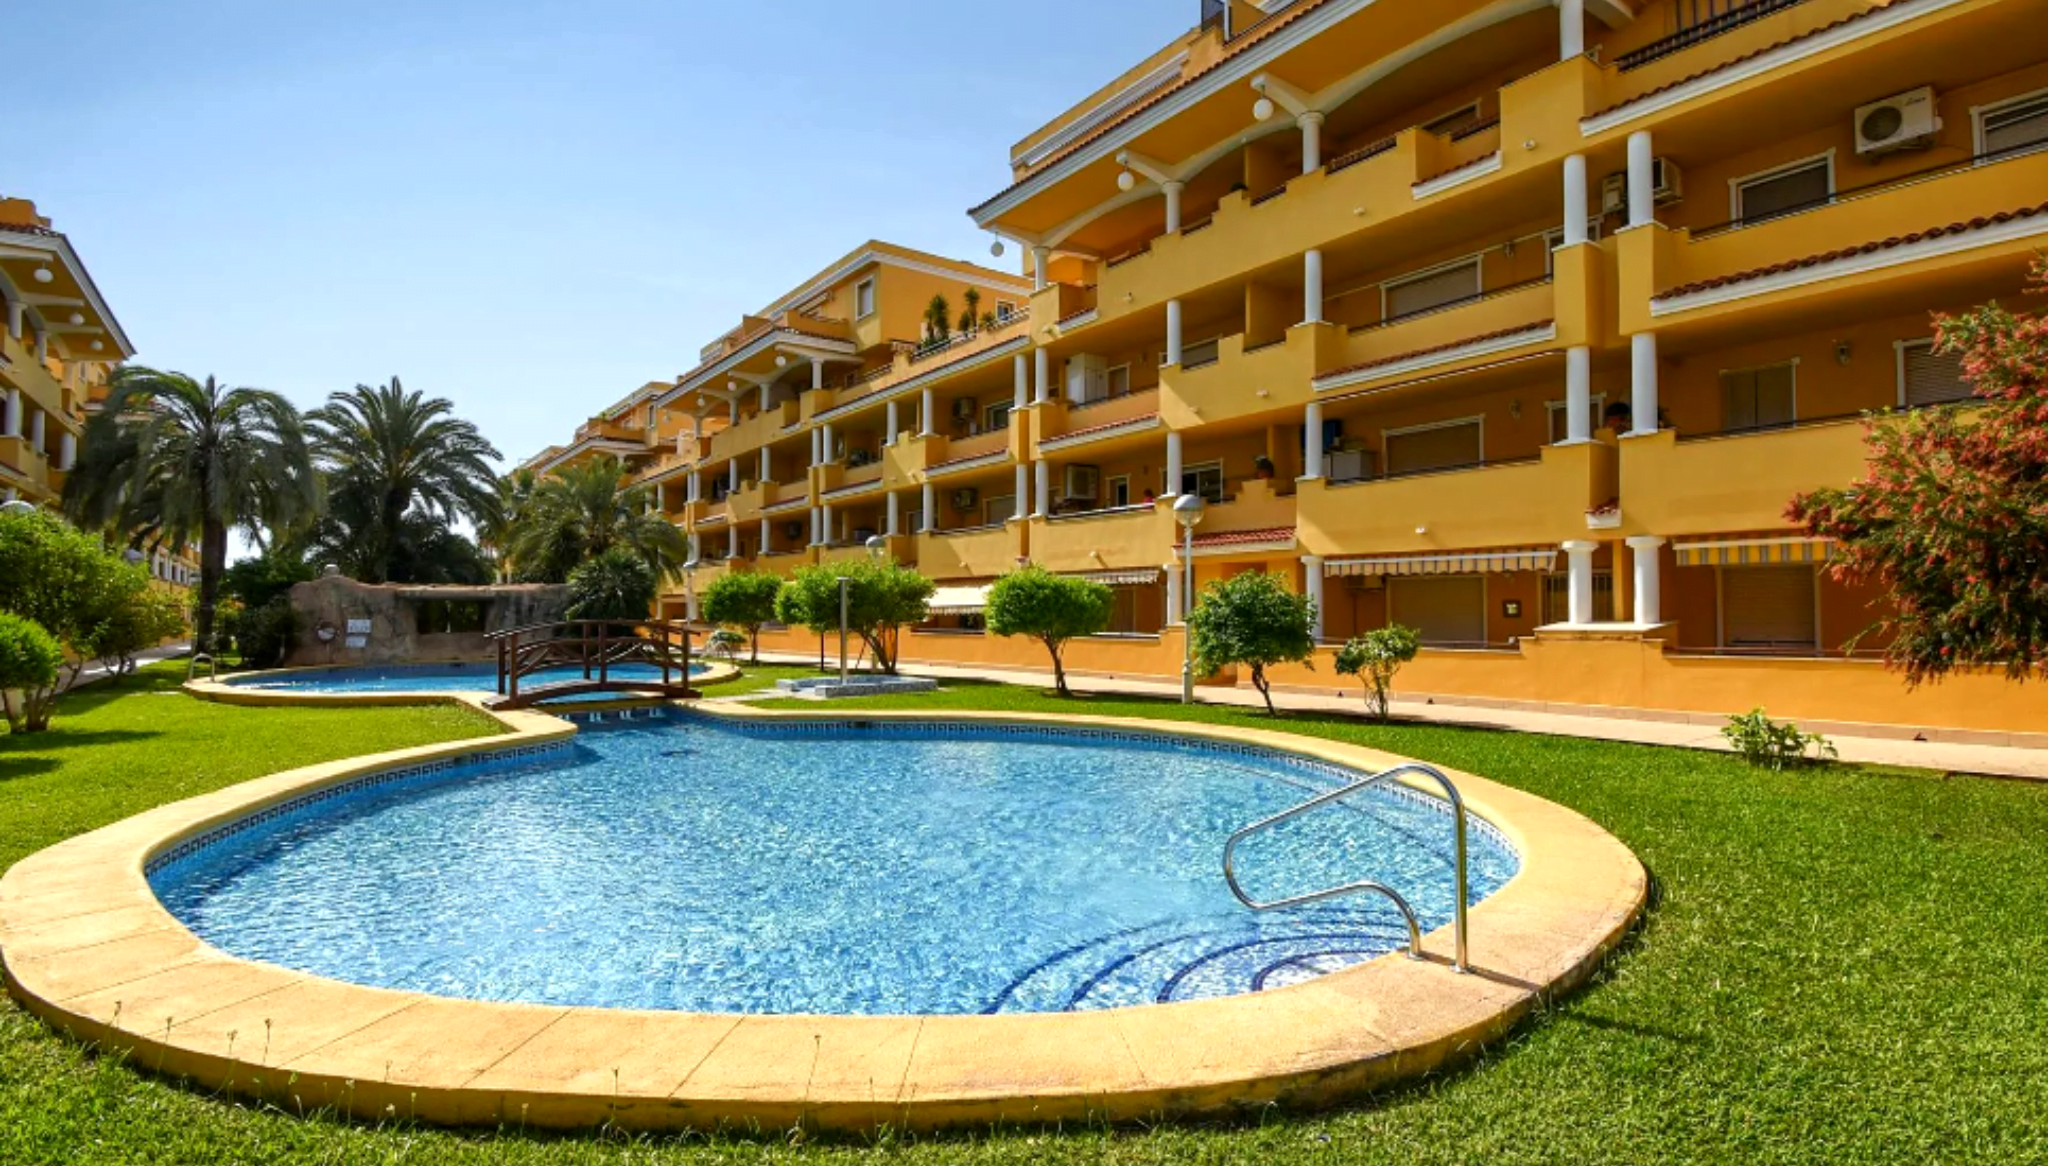 Apartamento confortable con piscina comunitaria en forma de laguna